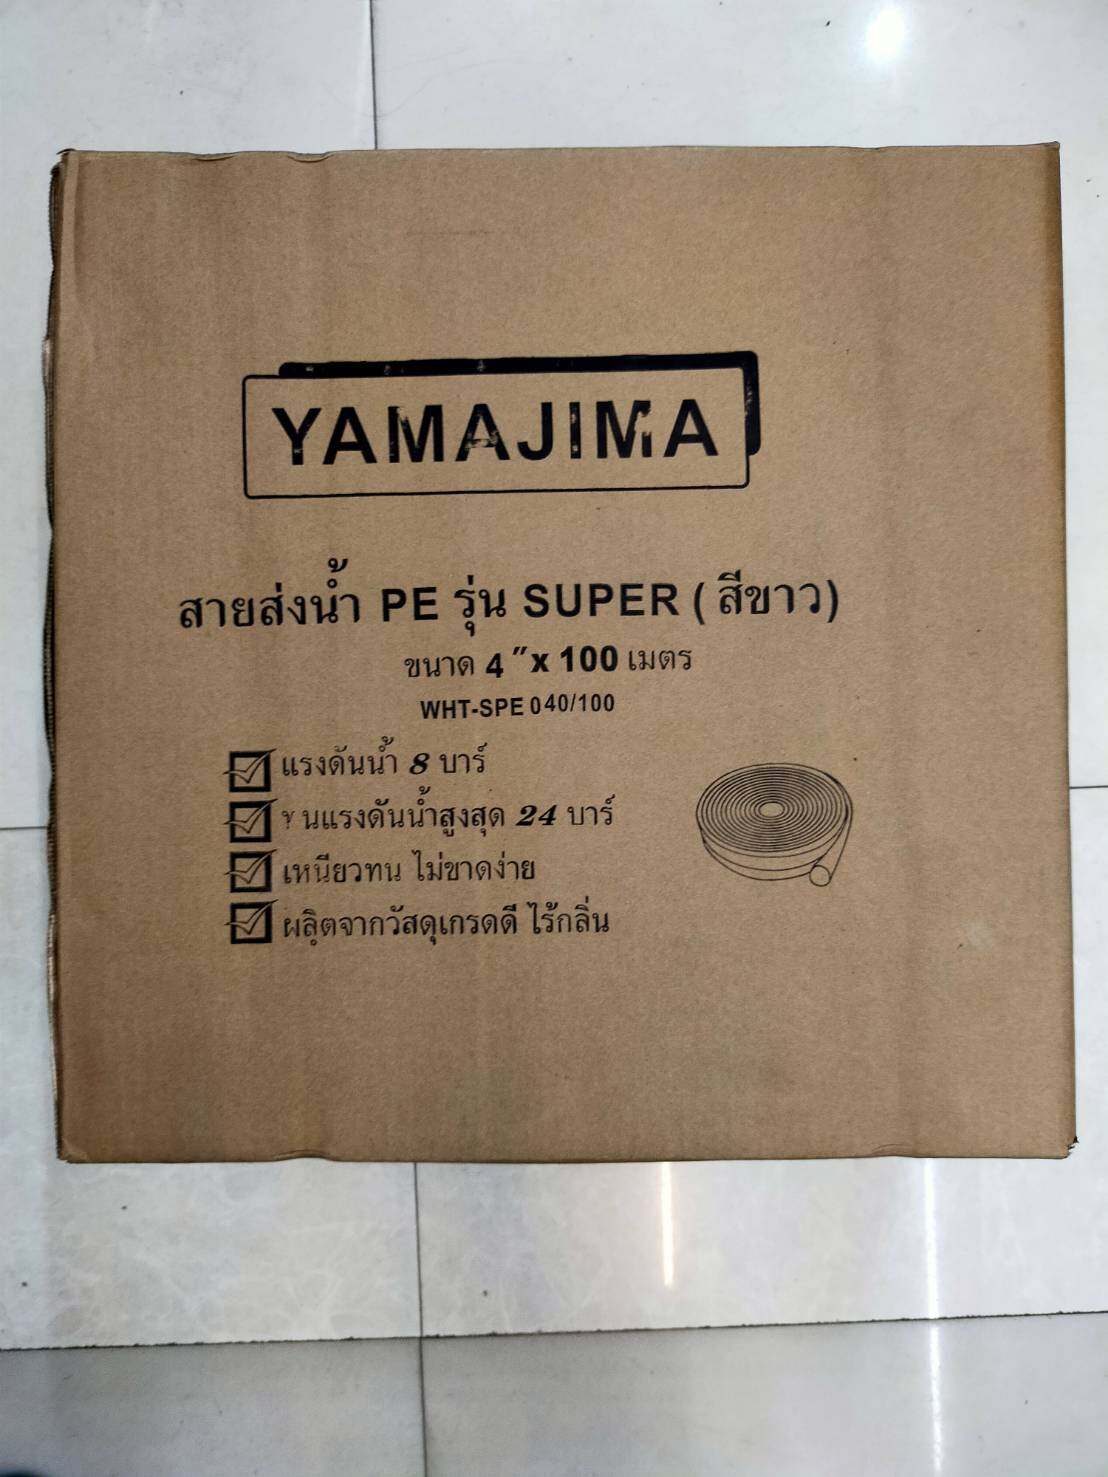 YAMAJIMA 🇹🇭 สายส่งน้ำ PE (24Bars) ขนาด 4นิ้ว ยาว100m. รุ่น SUPER สีขาว 1ม้วน สายน้ำ สายดับเพลิง ใช้ในงานเกษตรทั่วไป อุปกรณ์เกษตร สวน ระบบน้ำ